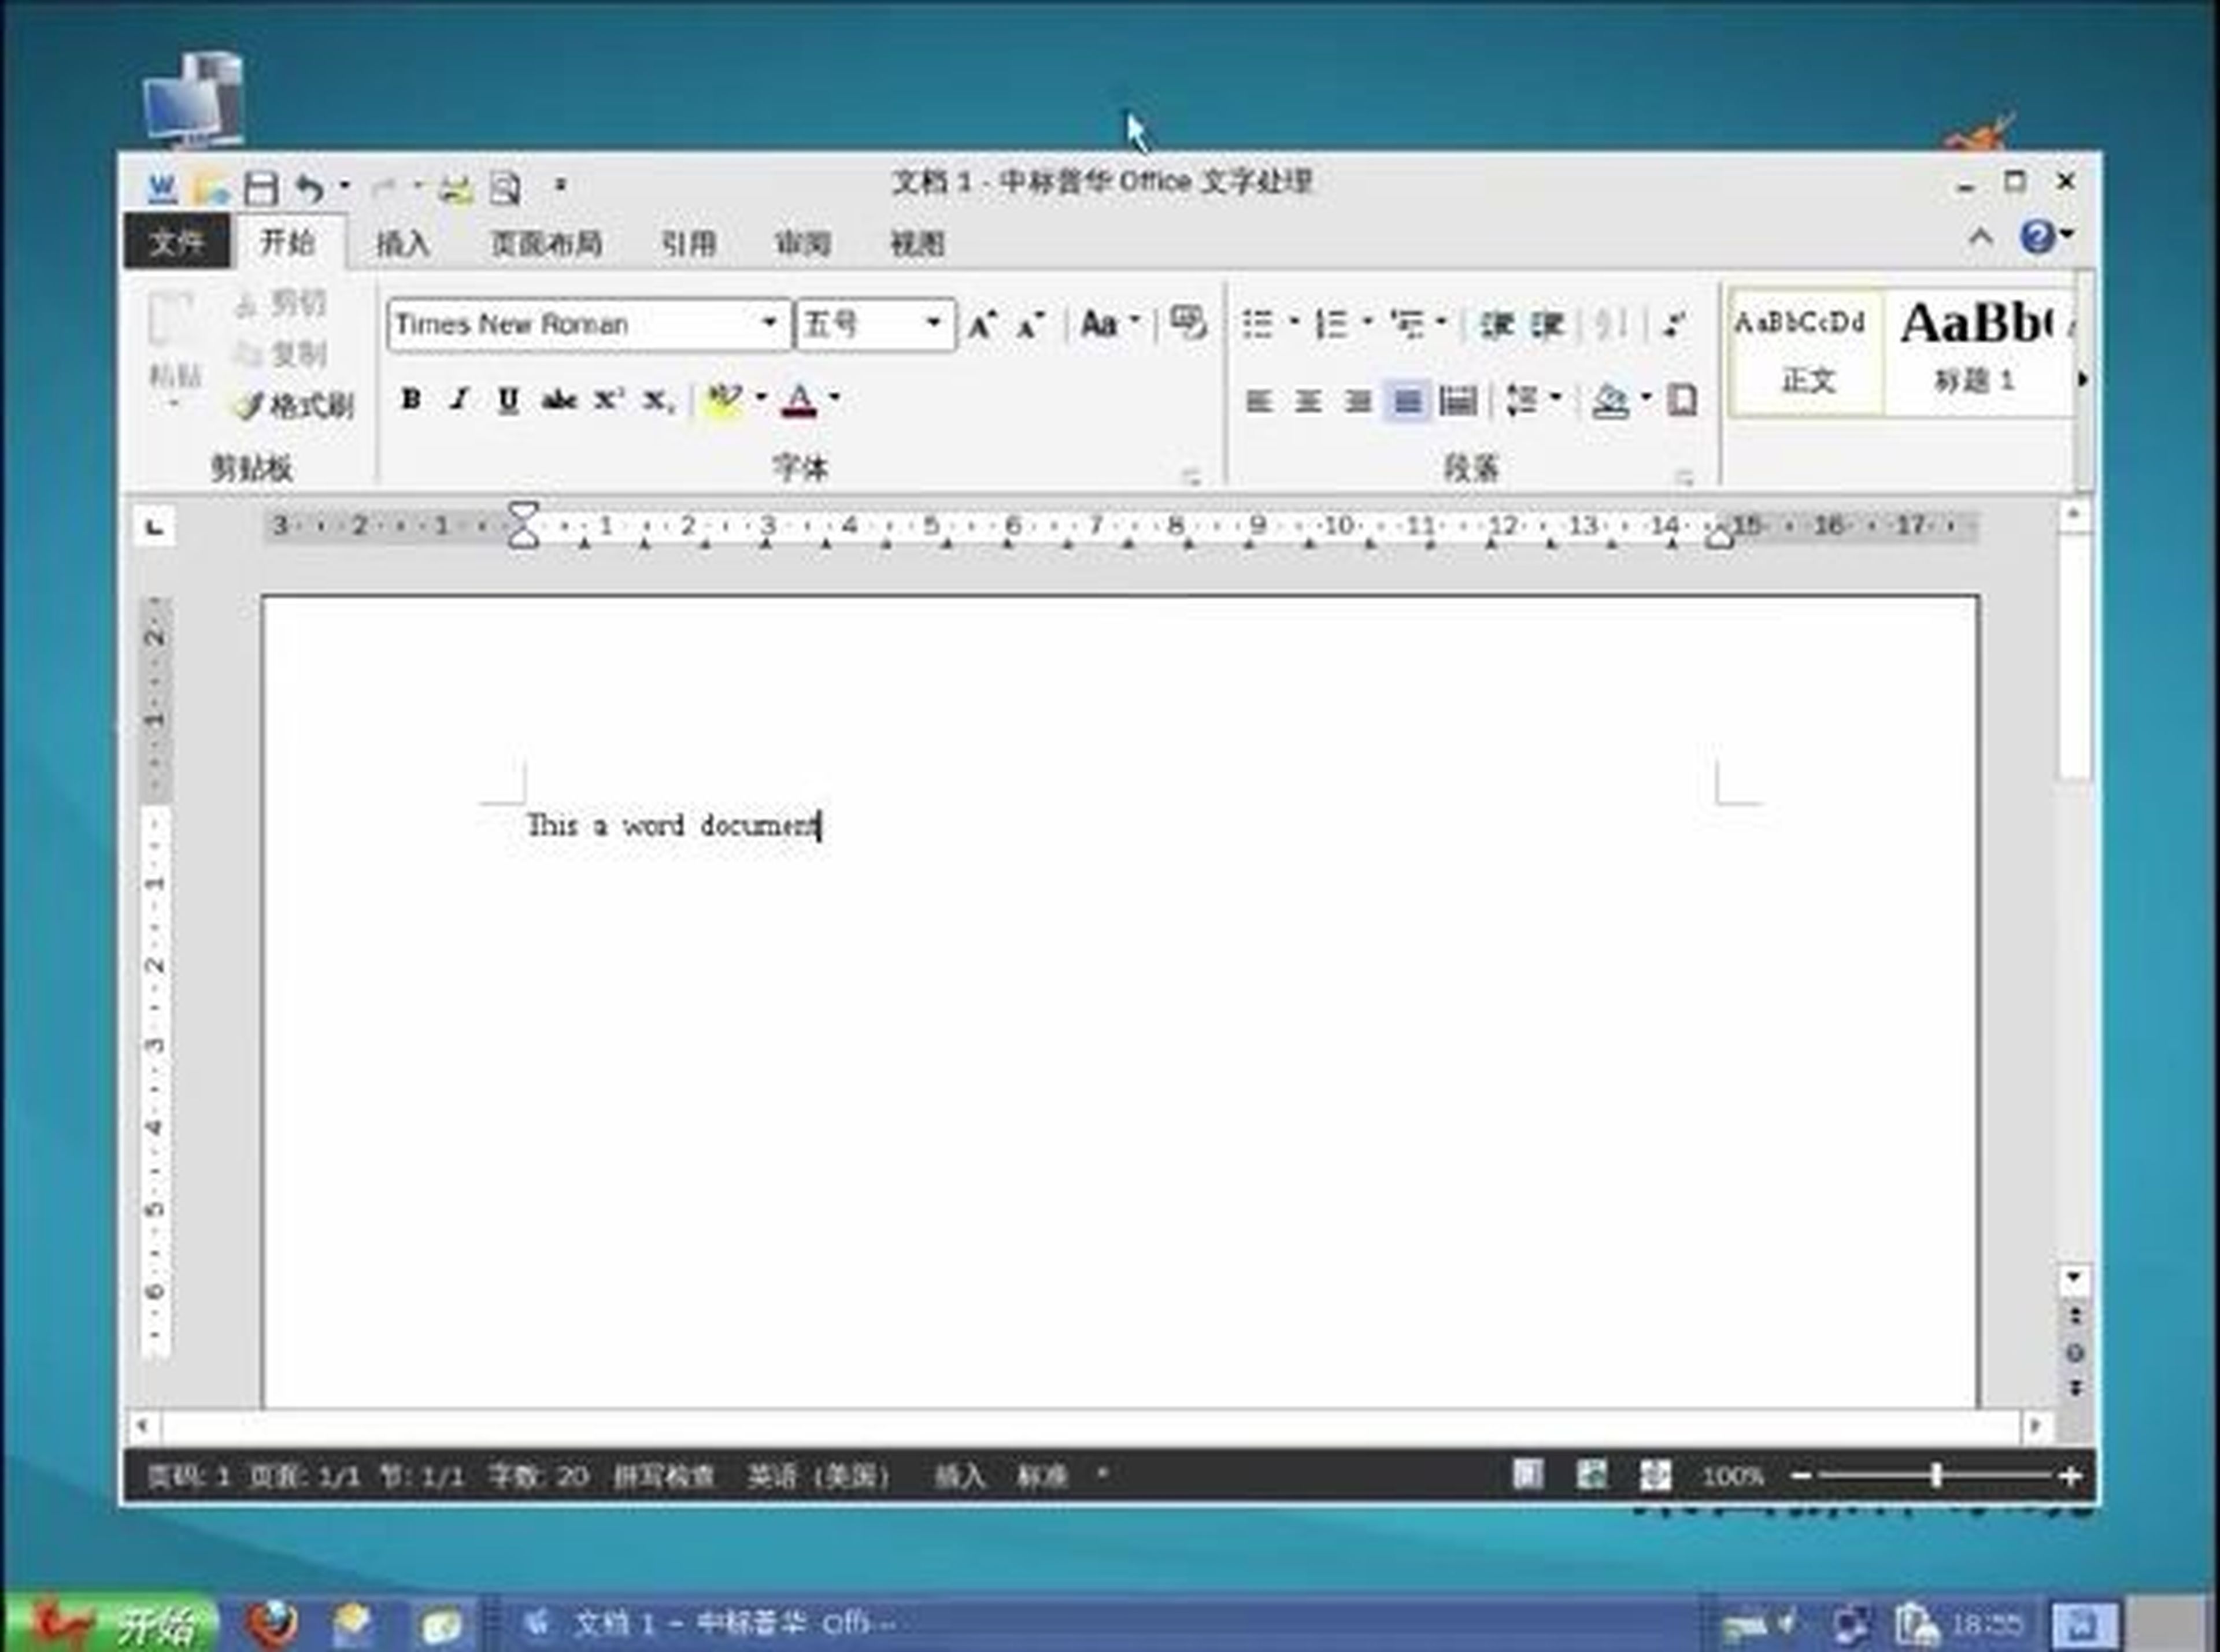 NeoKylin, el sistema operativo chino inspirado en Windows XP